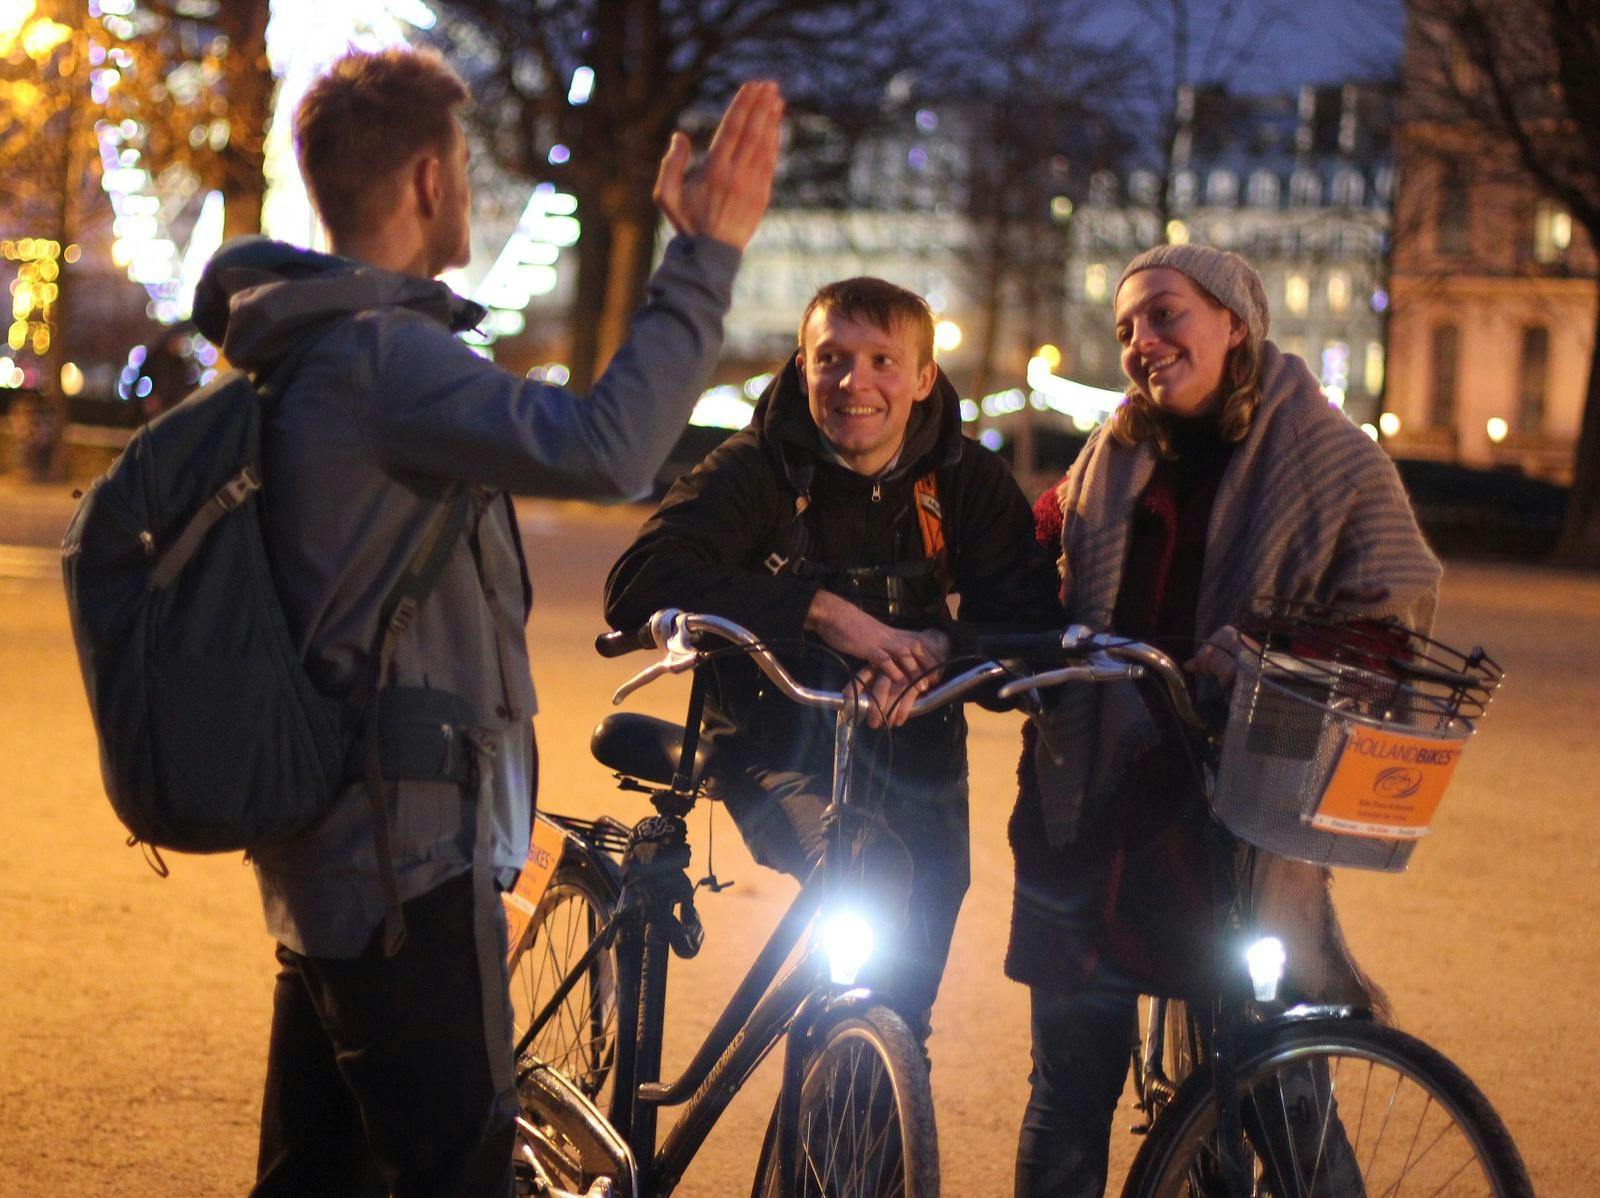 Tour en bicicleta de noche en París